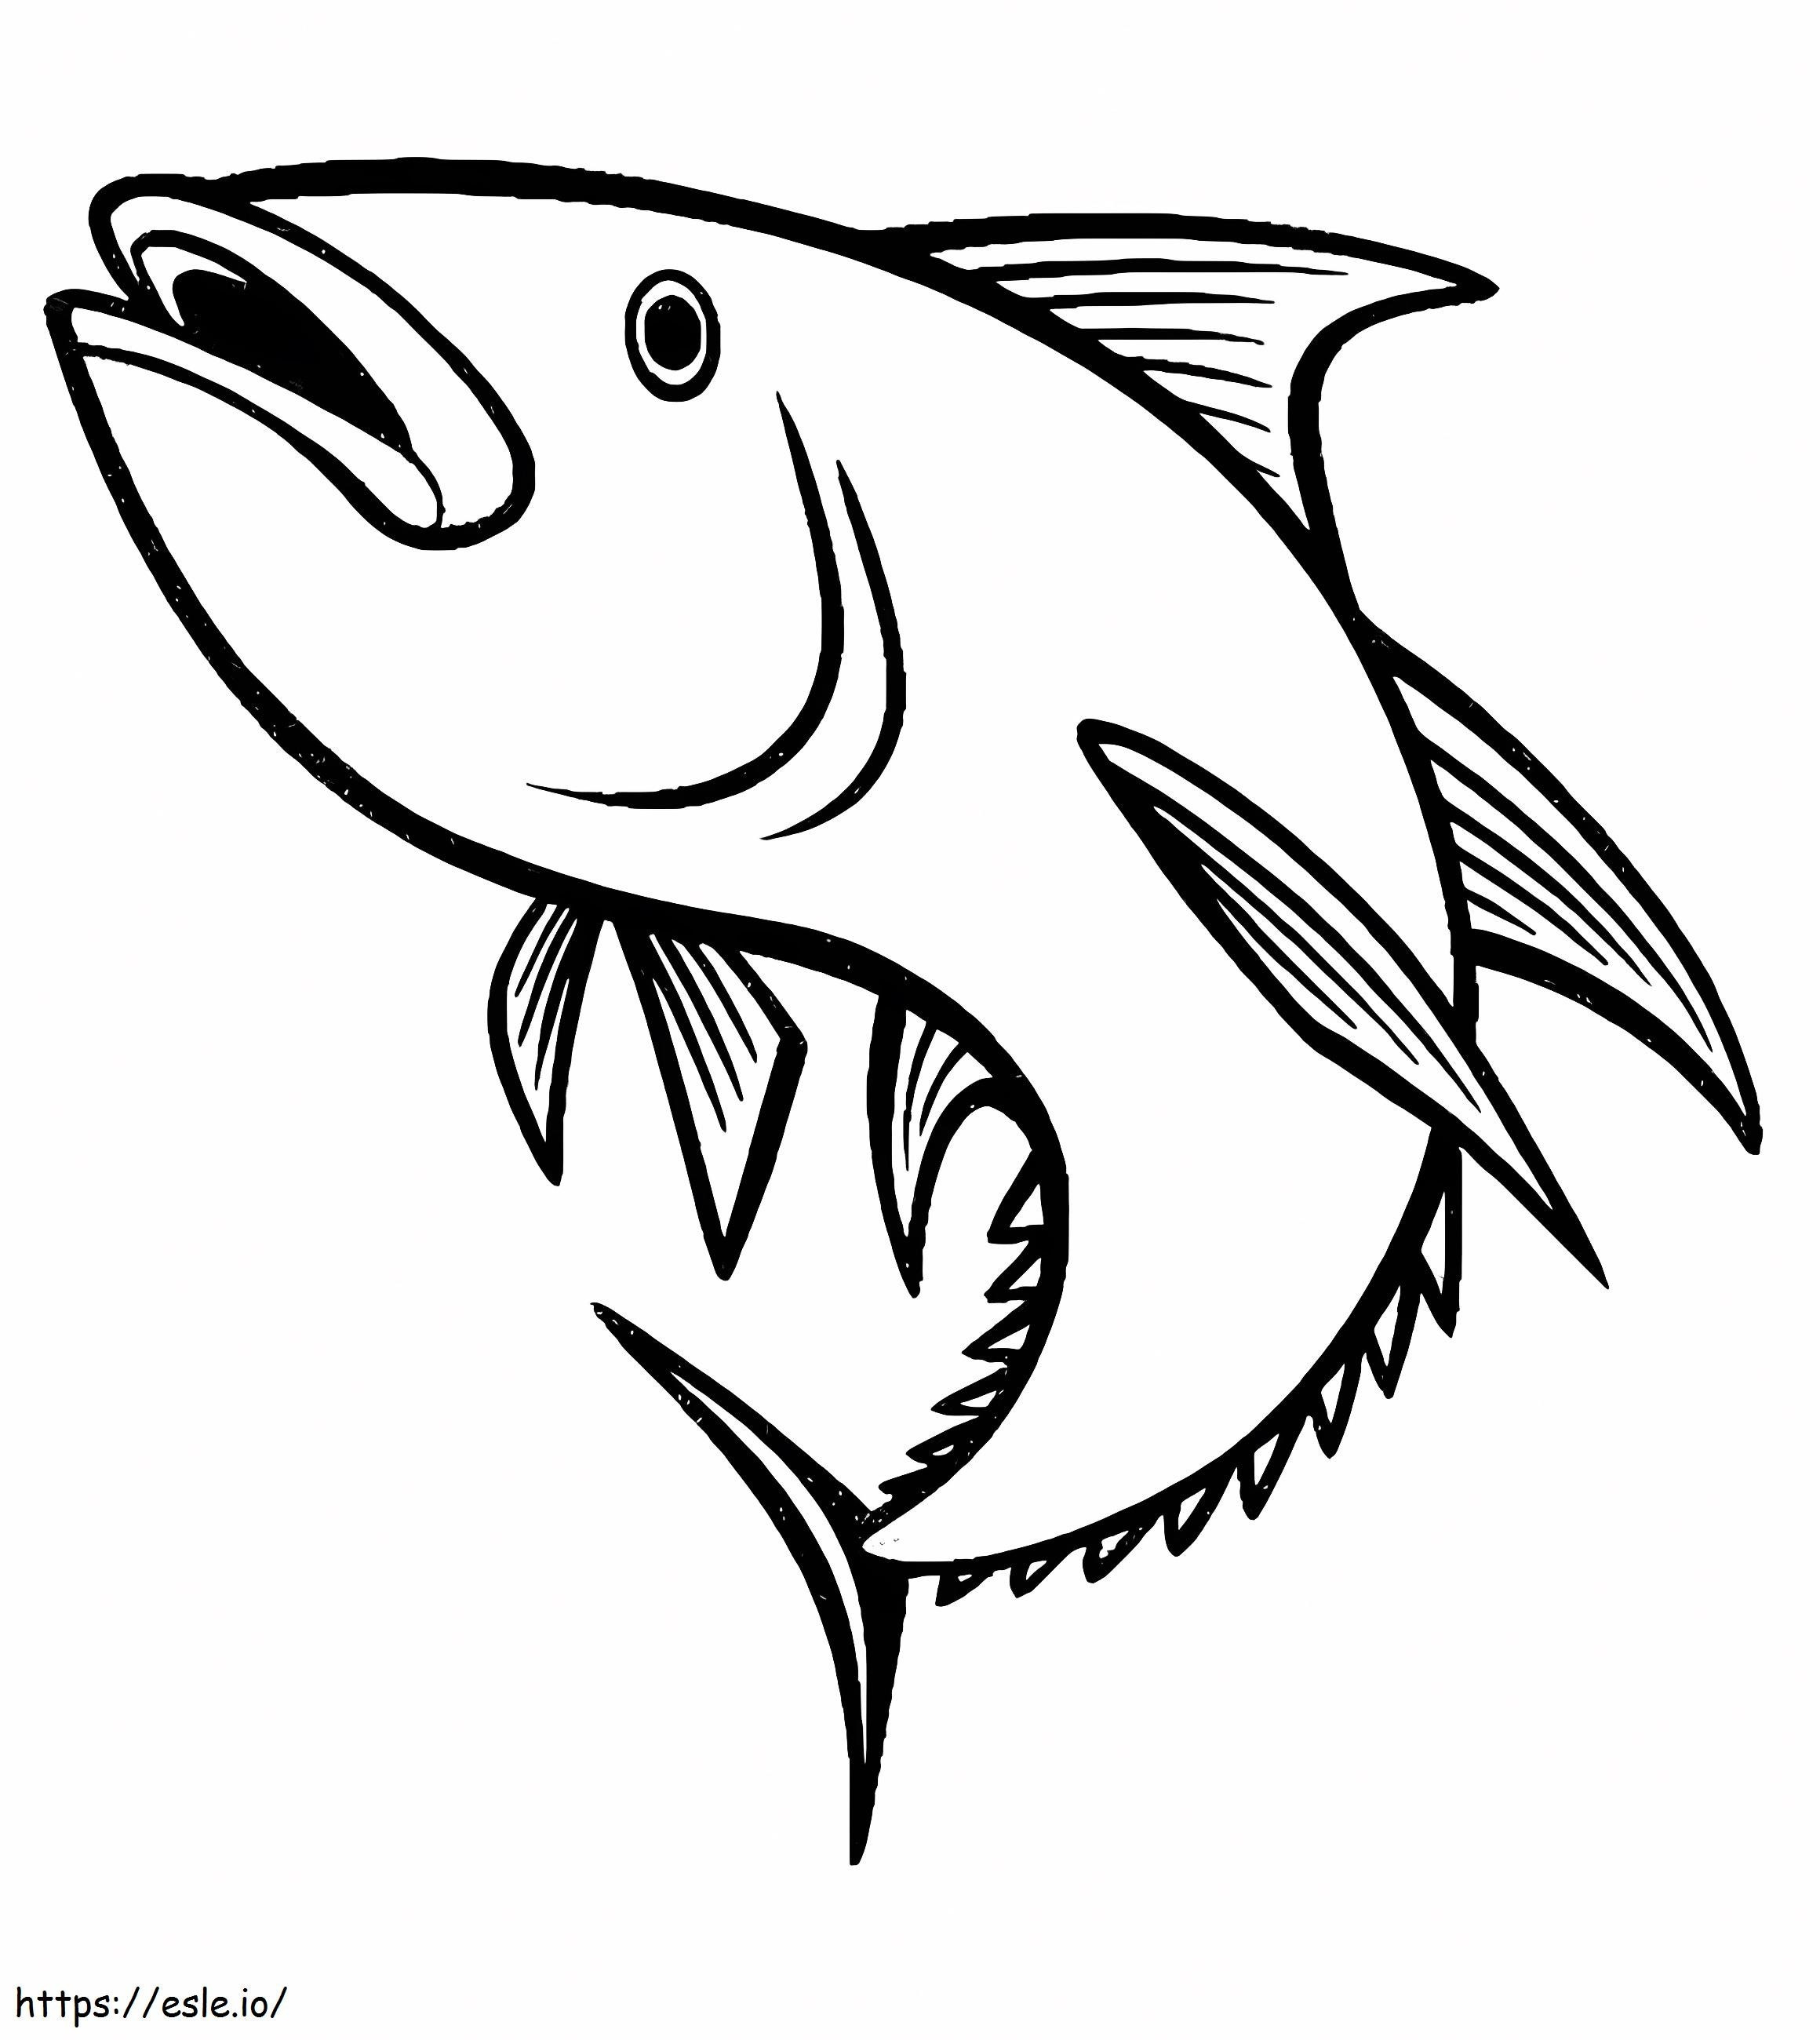 Ücretsiz Yazdırılabilir Ton Balığı boyama